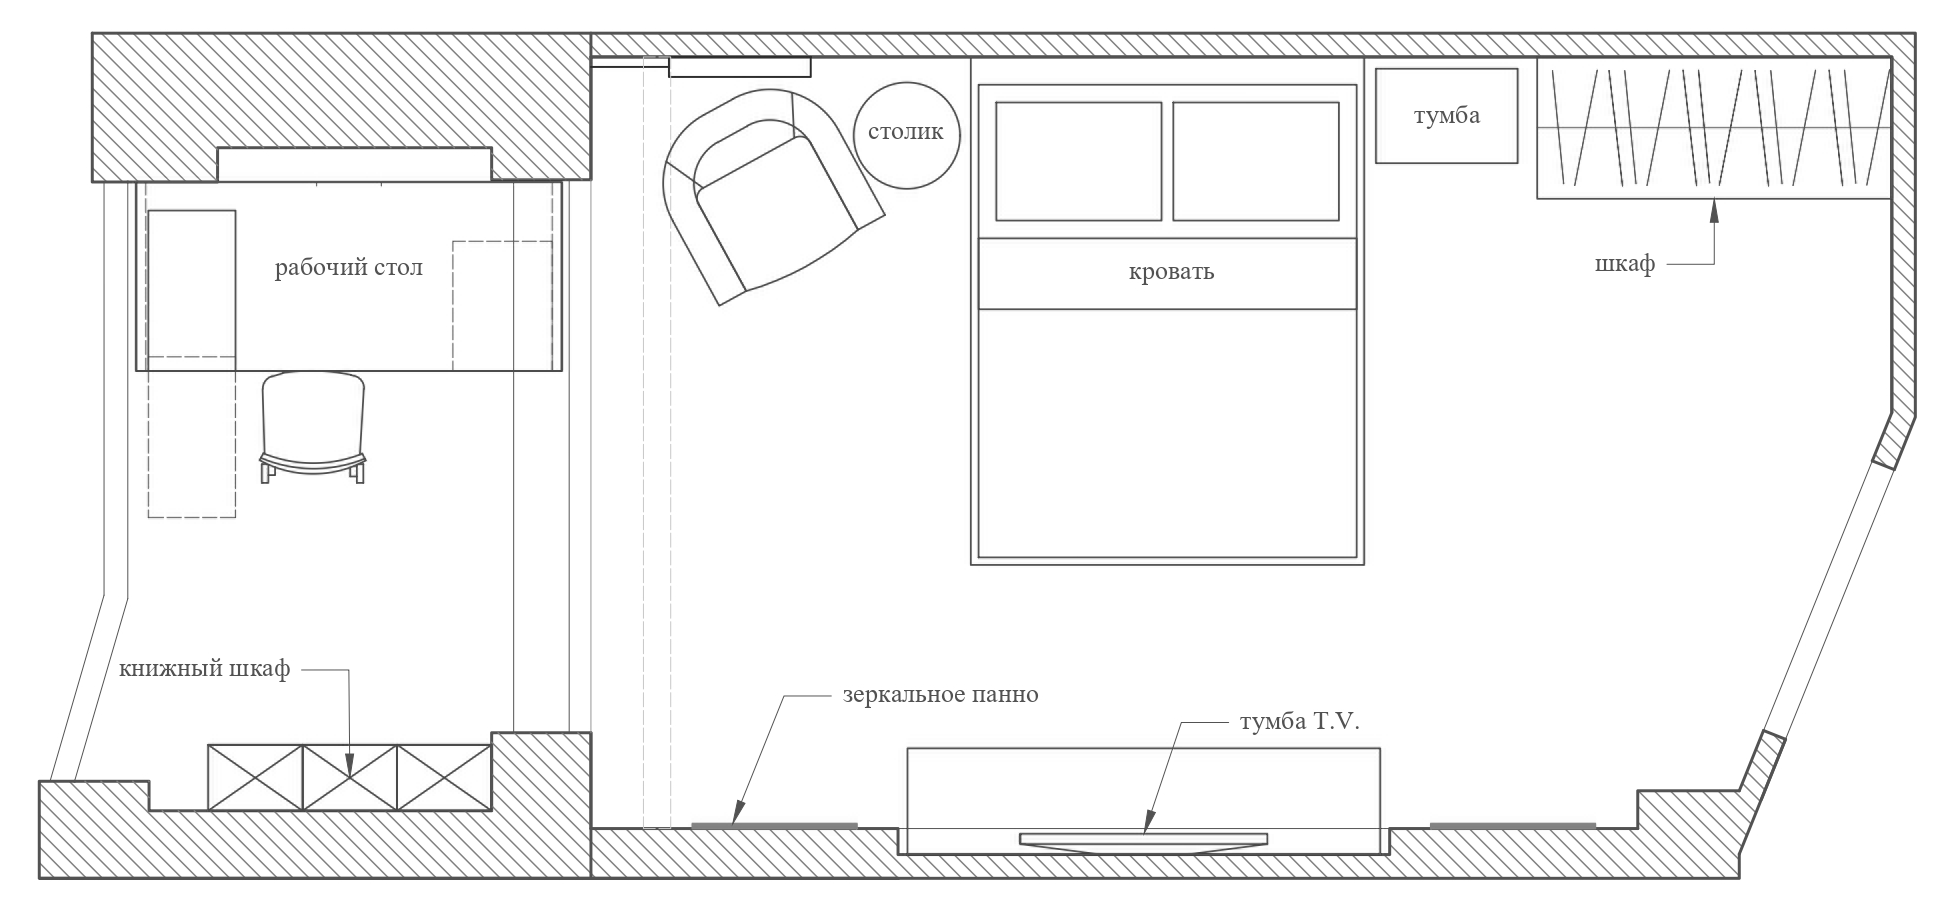 Схема расстановки мебели в спальне 12 кв м